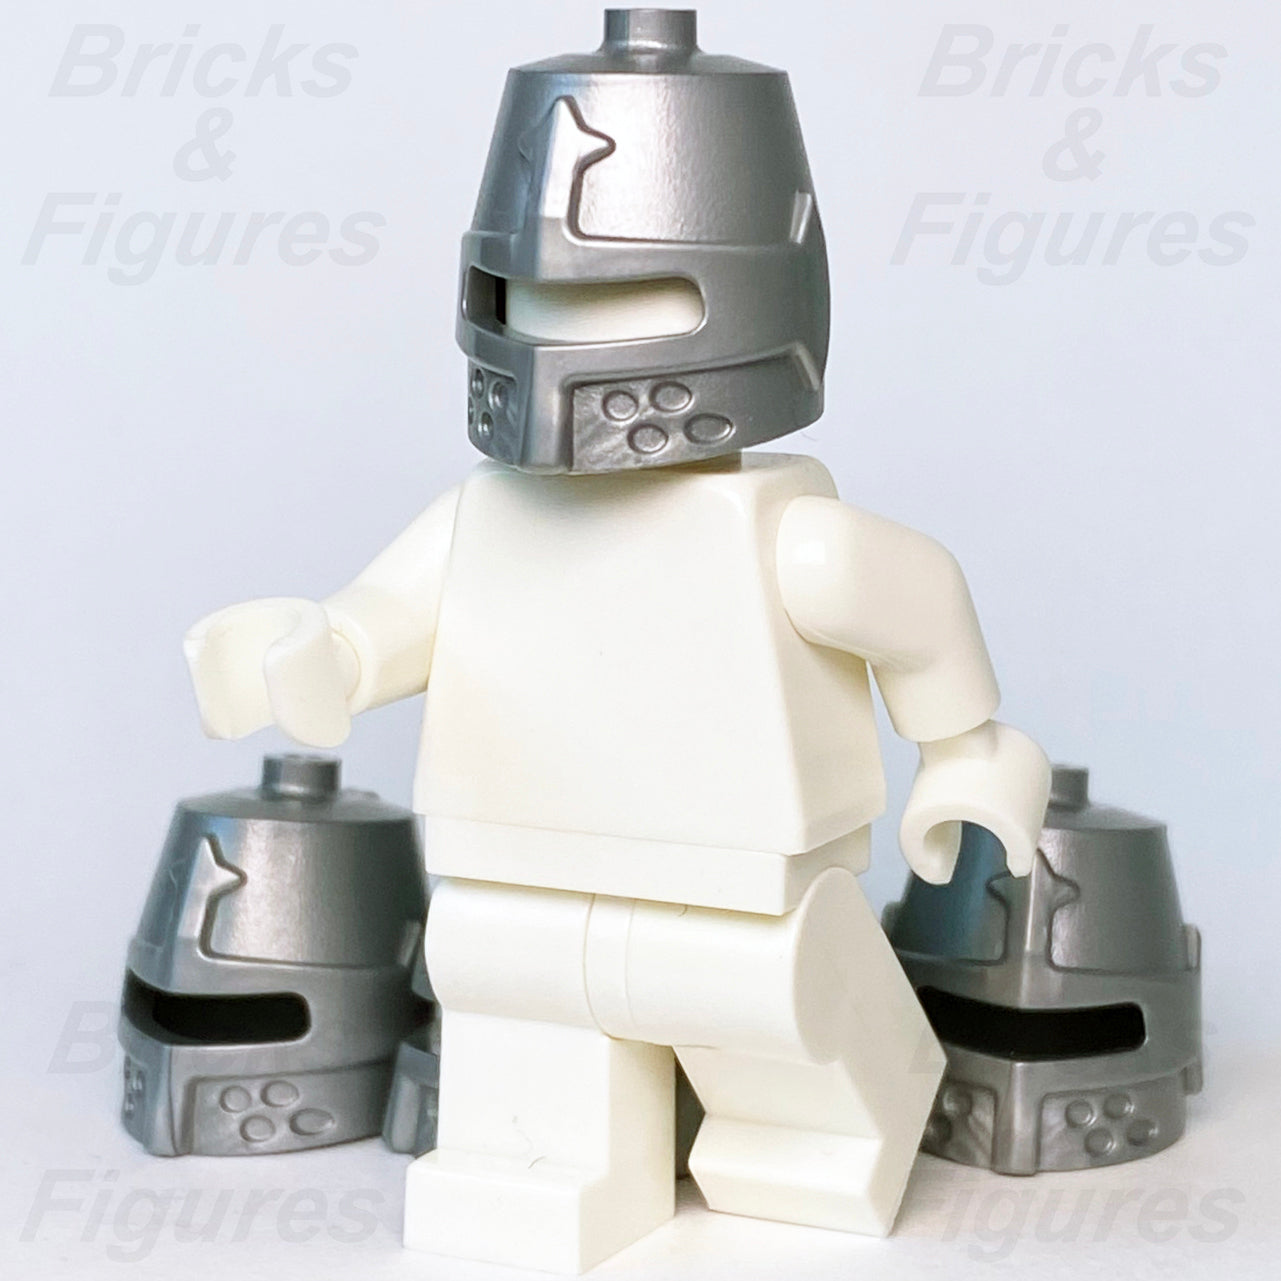 レゴ アイデア キャッスル ナイト クローズド ヘルメット ミニフィギュア パーツ 70322 21325 70333 x 5 